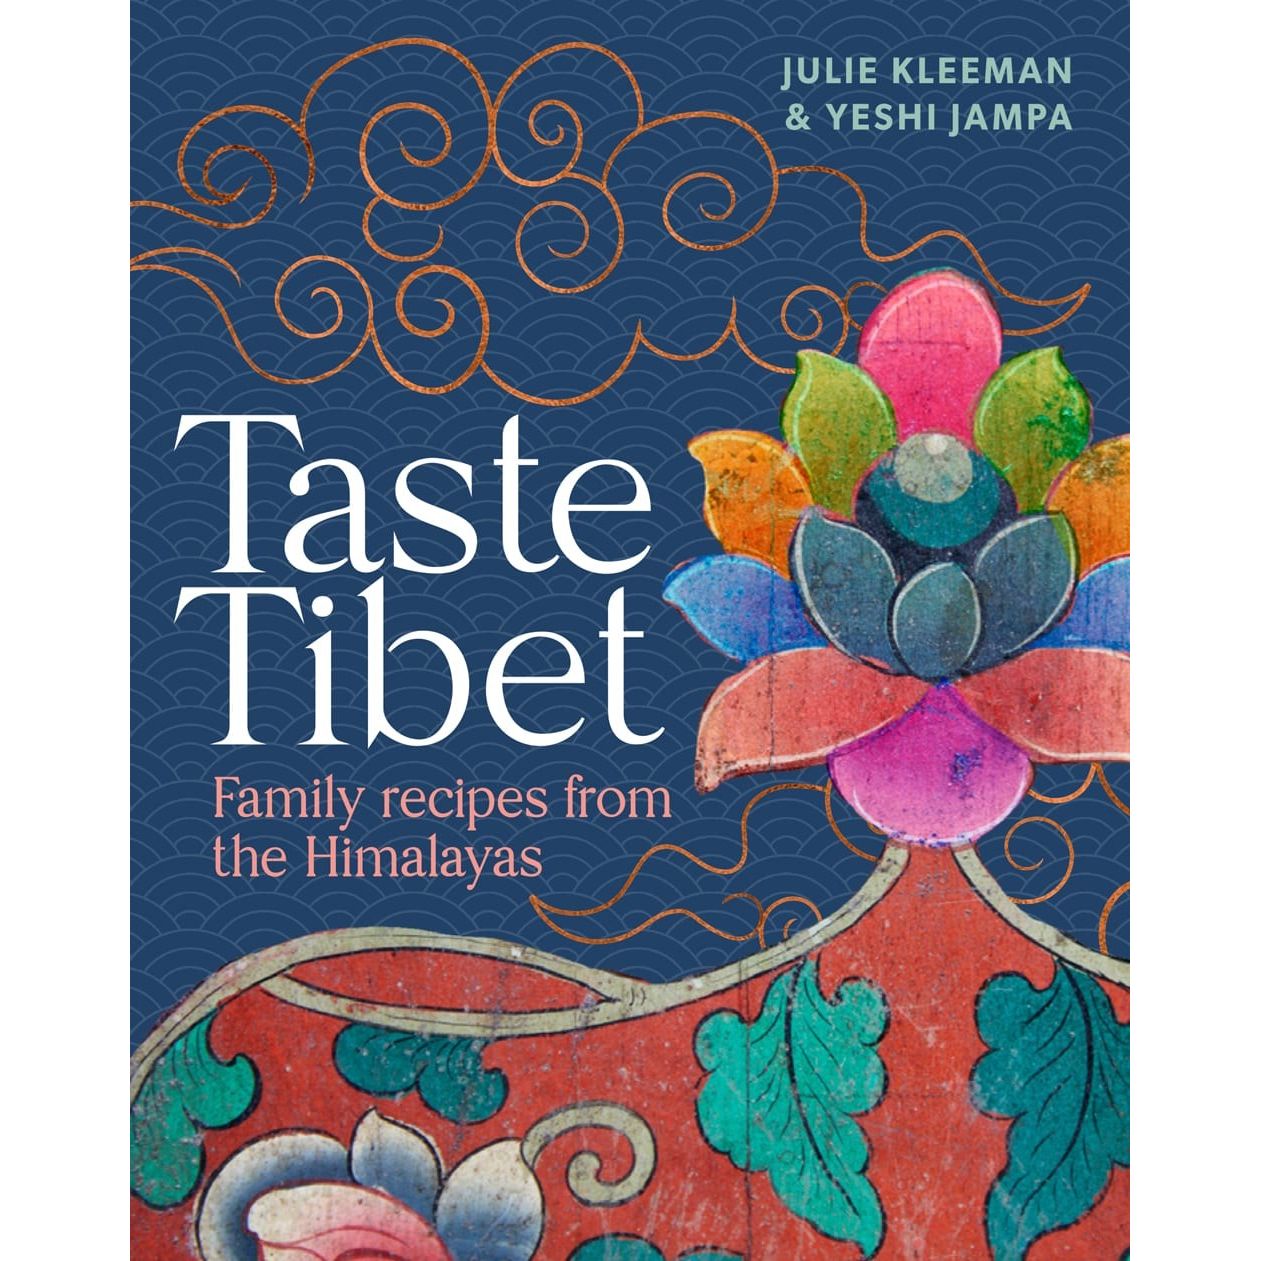 Taste Tibet (Julie Kleeman & Yeshi Jampa)